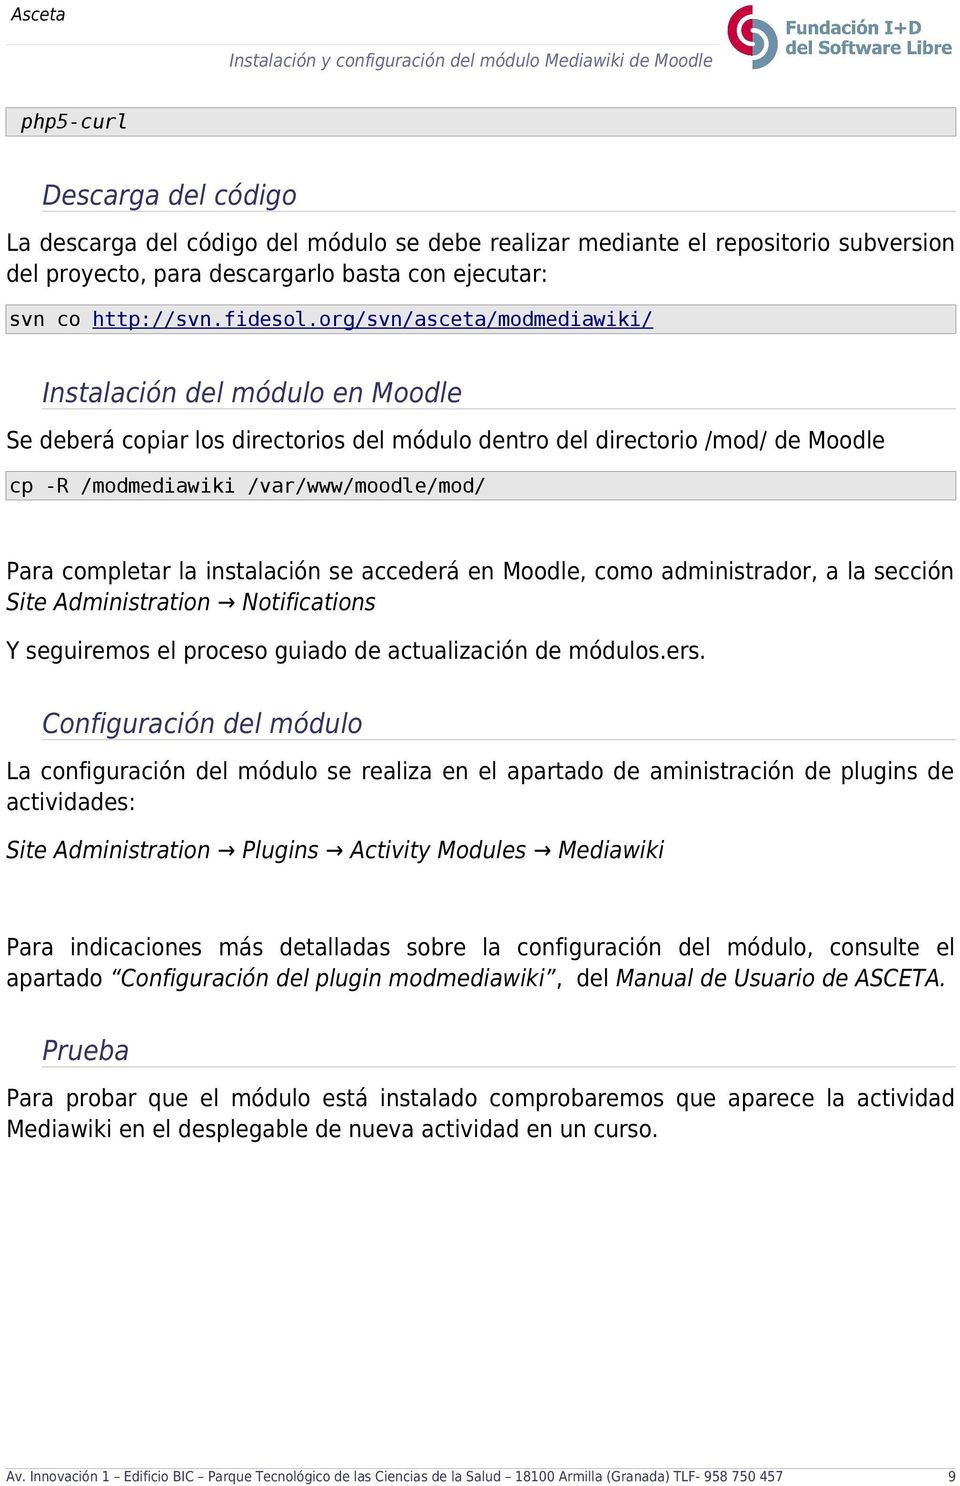 org/svn/asceta/modmediawiki/ Instalación del módulo en Moodle Se deberá copiar los directorios del módulo dentro del directorio /mod/ de Moodle cp -R /modmediawiki /var/www/moodle/mod/ Para completar